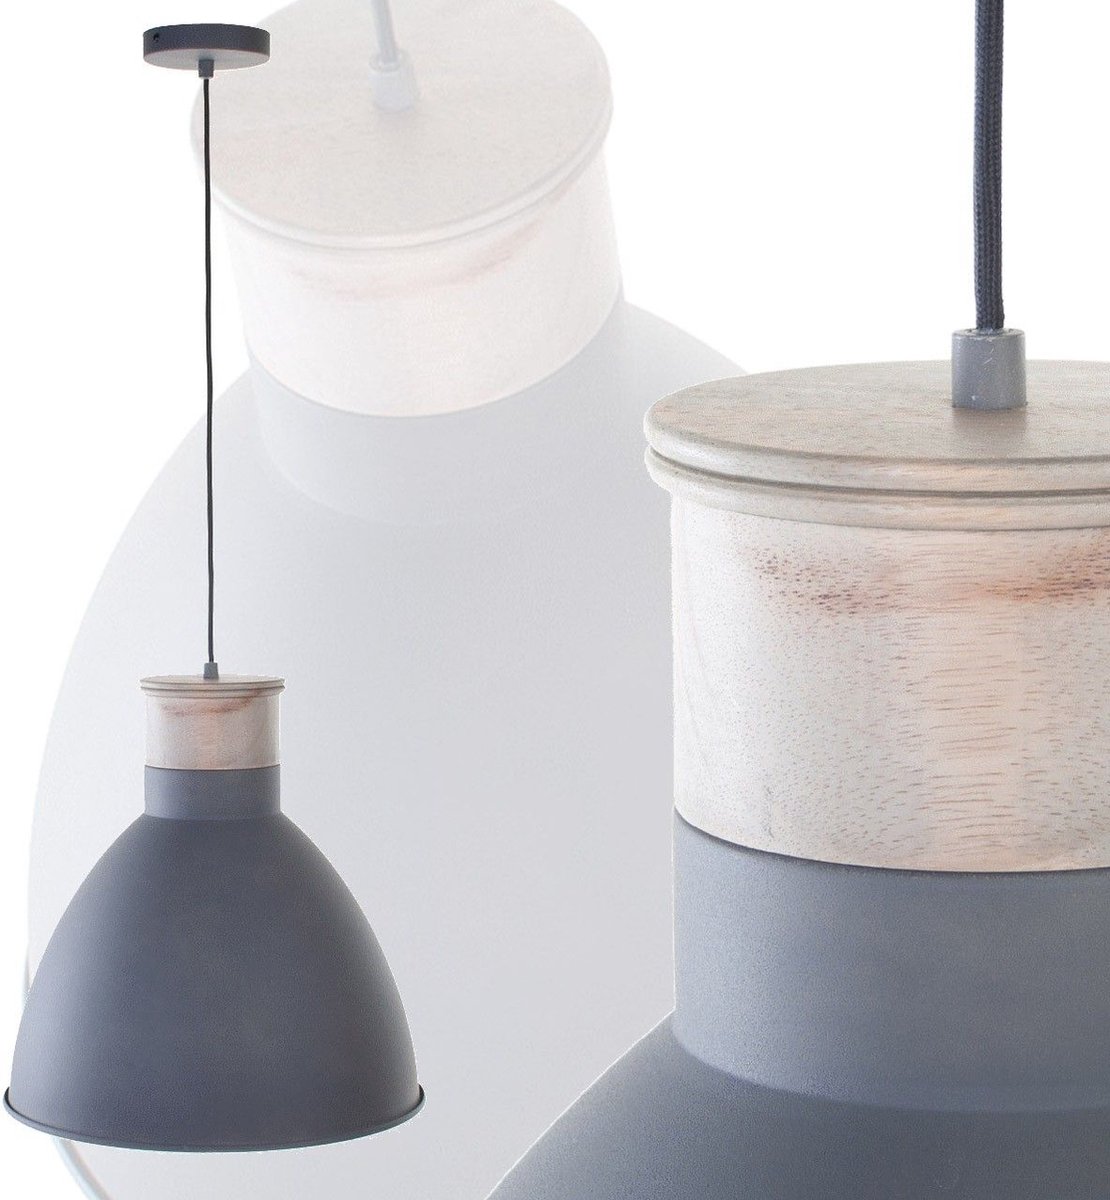 Scandinavische hanglamp | 1 lichts | bruin / grijs / beton look | hout / metaal | Ø 40 cm | in hoogte verstelbaar tot 160 cm | eetkamer / eettafel lamp | modern / sfeervol / robuust design